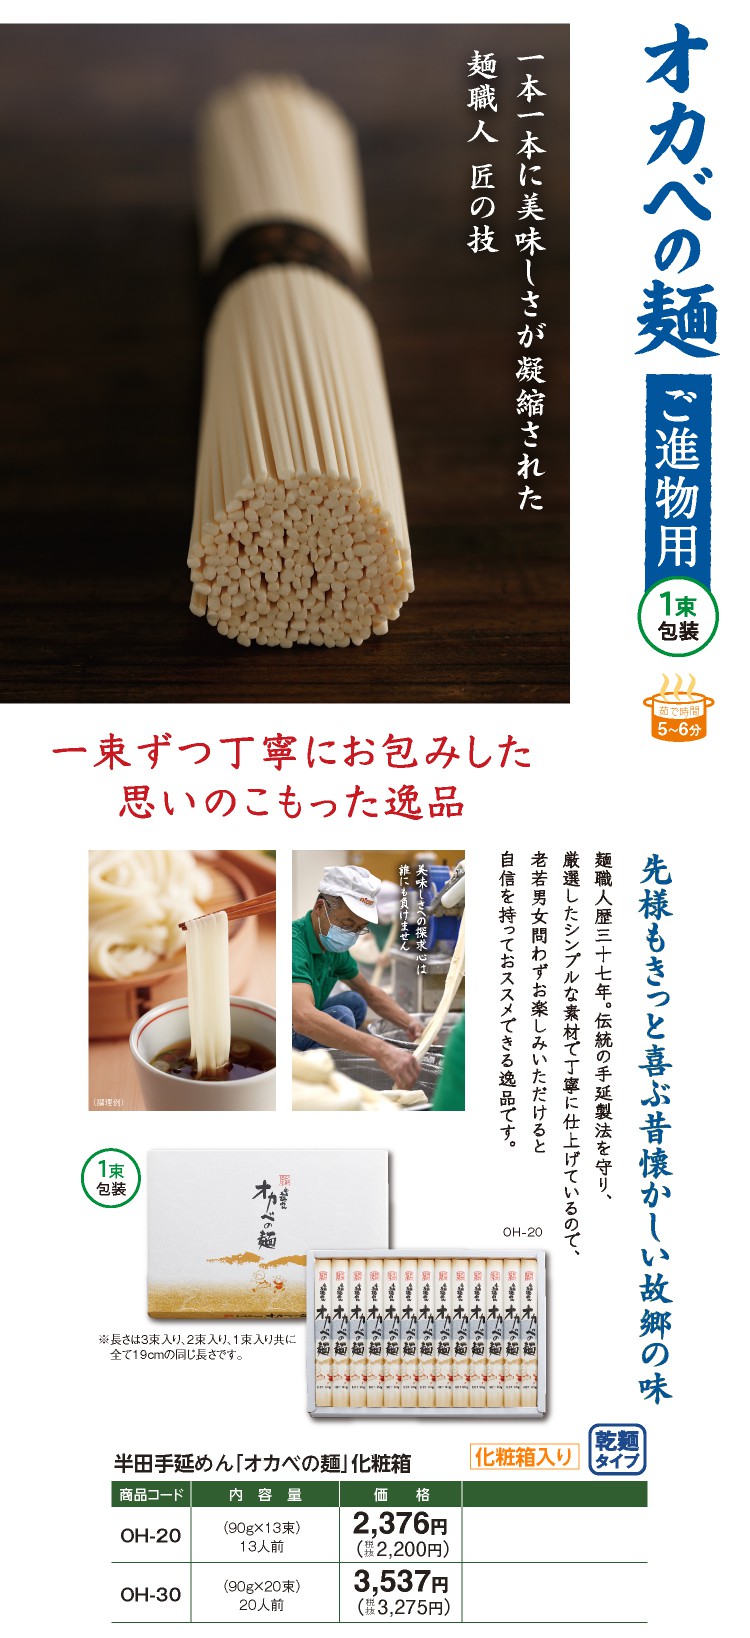 オカベの麺 ご進物用1束包装